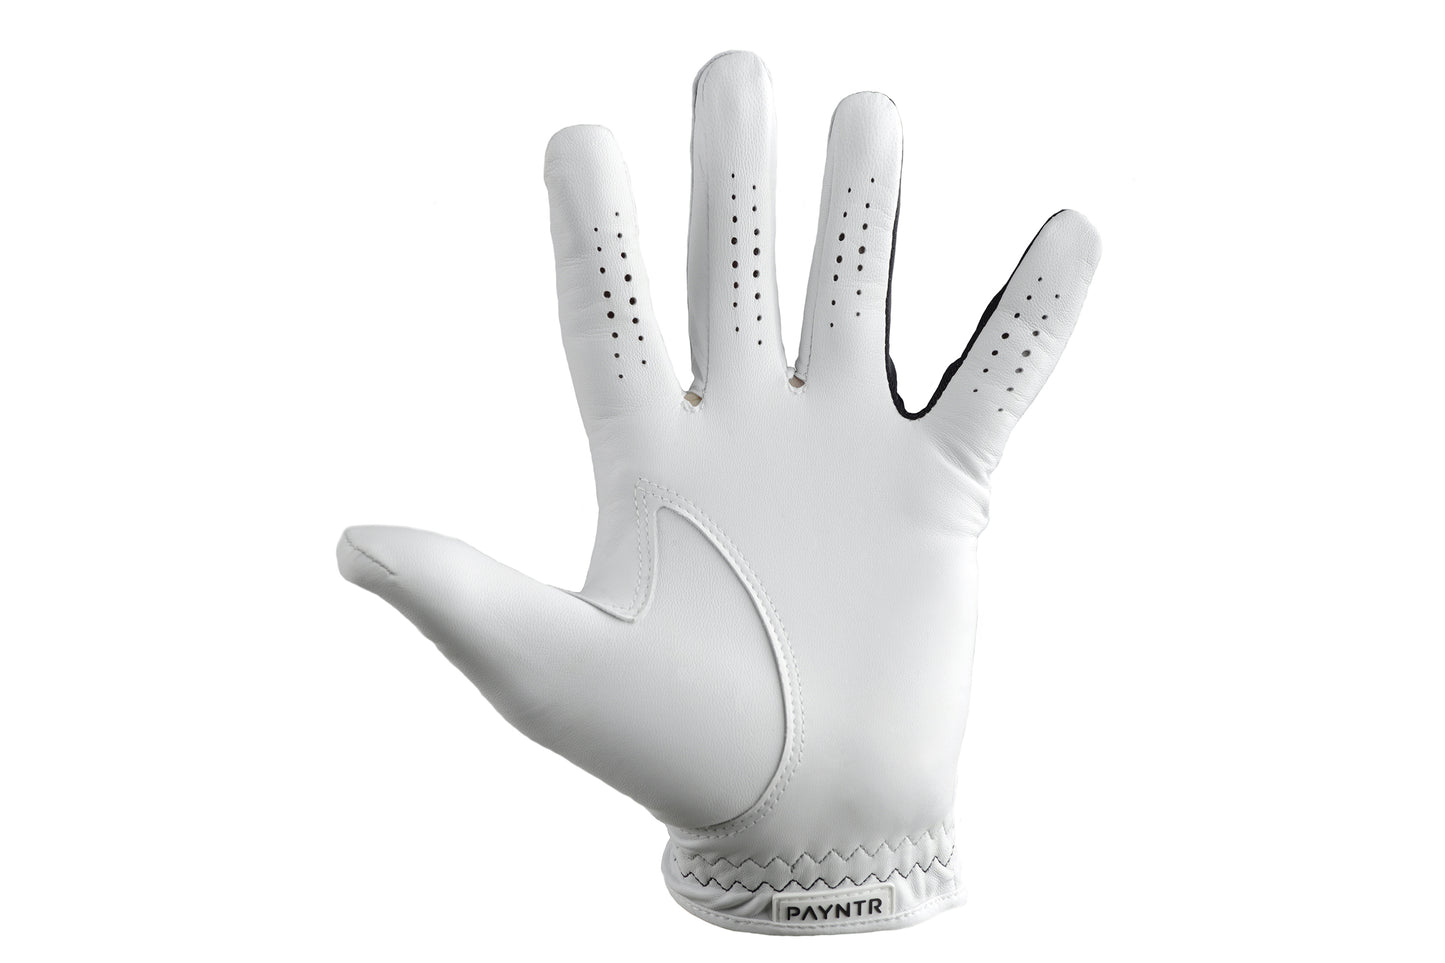 X  Glove 002 Regular - LH